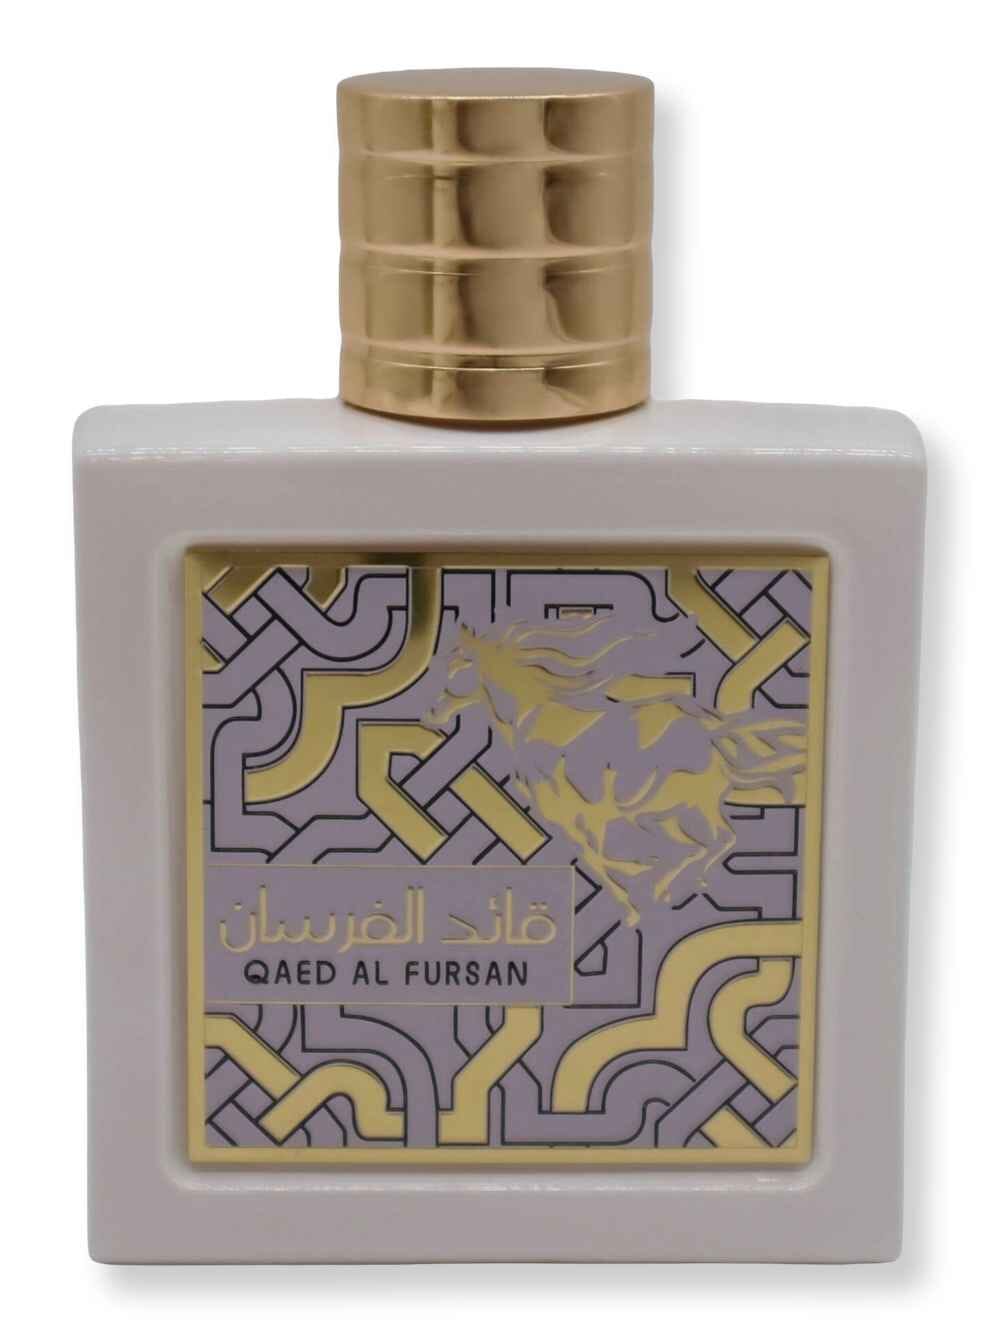 Lattafa Lattafa Qaed Al Fursan Unlimited Men EDP Spray 90 ml Perfume 